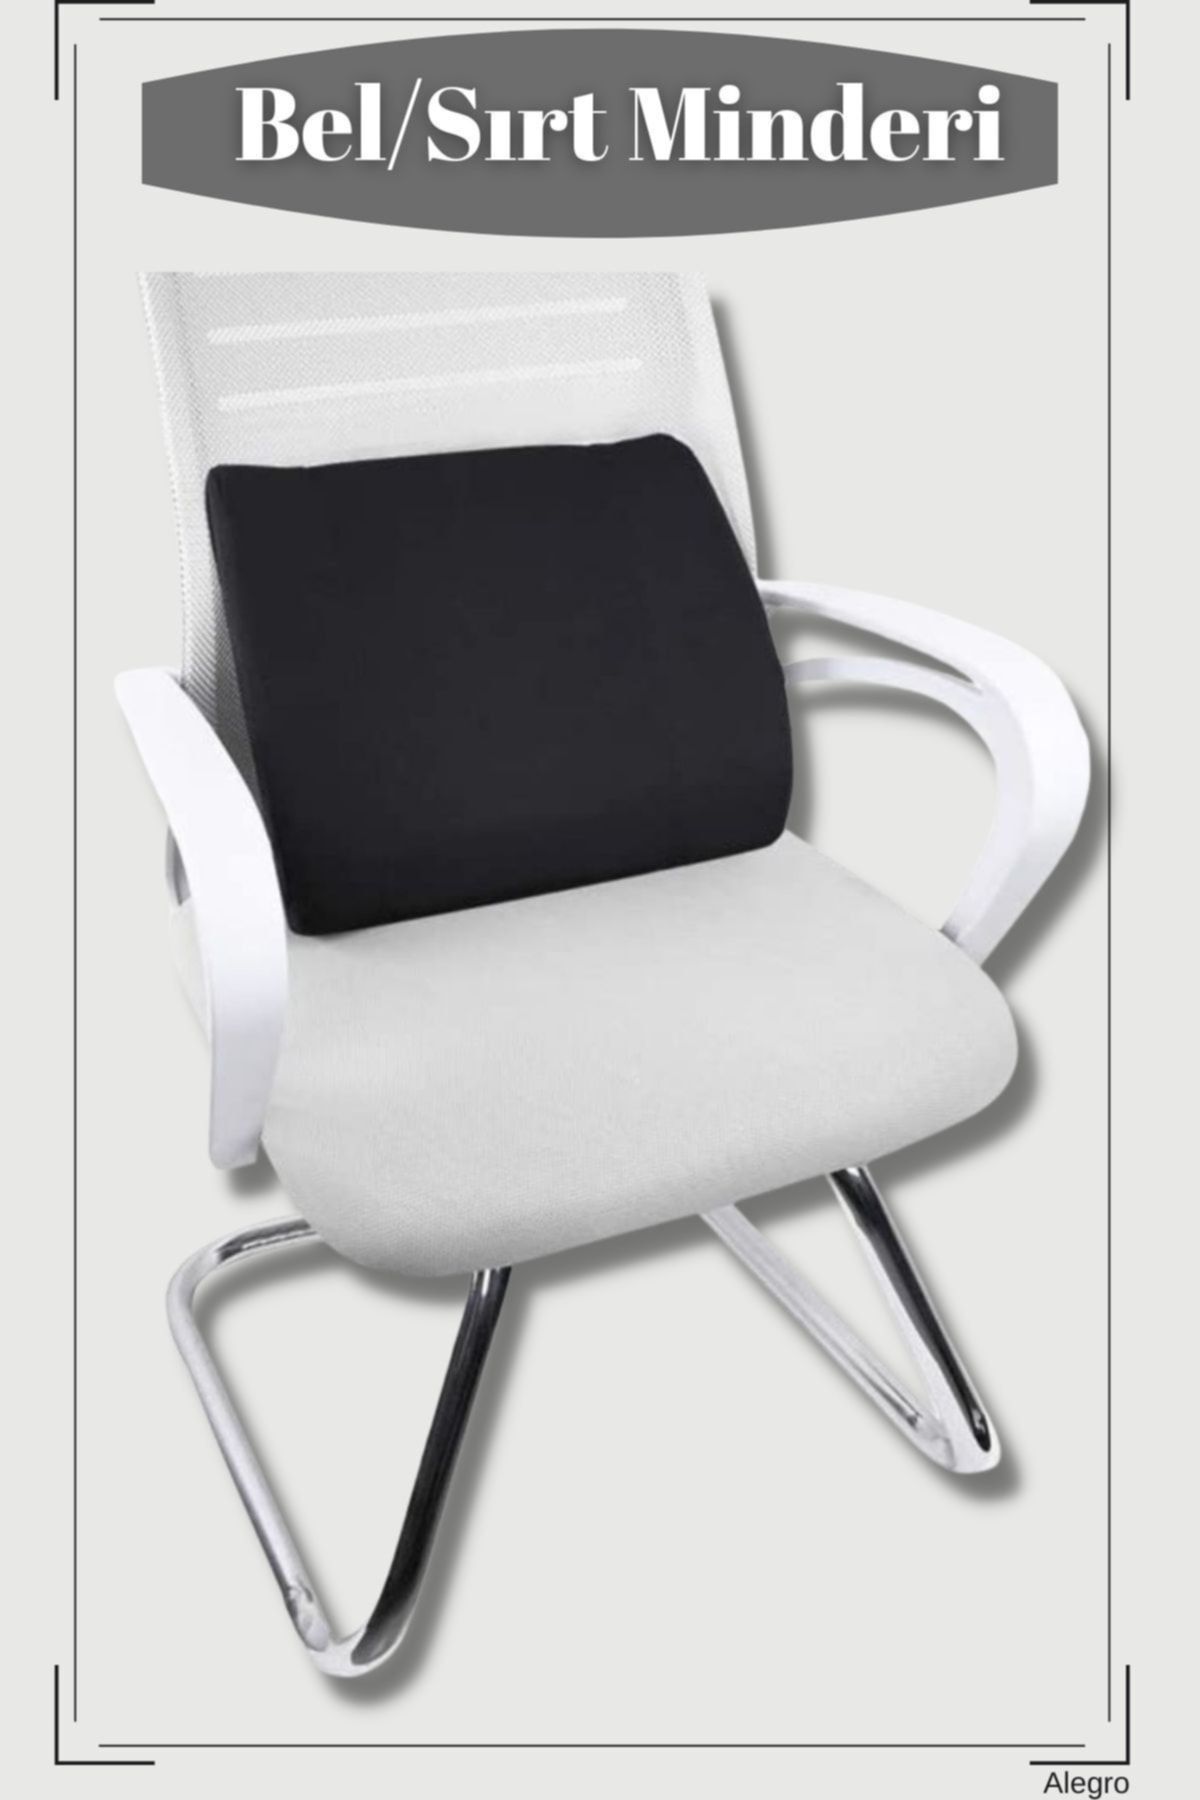 Ankaflex Lüx Ortopedik Sırt Minderi Araç Koltuk Sandalye Bel Yastığı Bel Desteği Bel Minderi